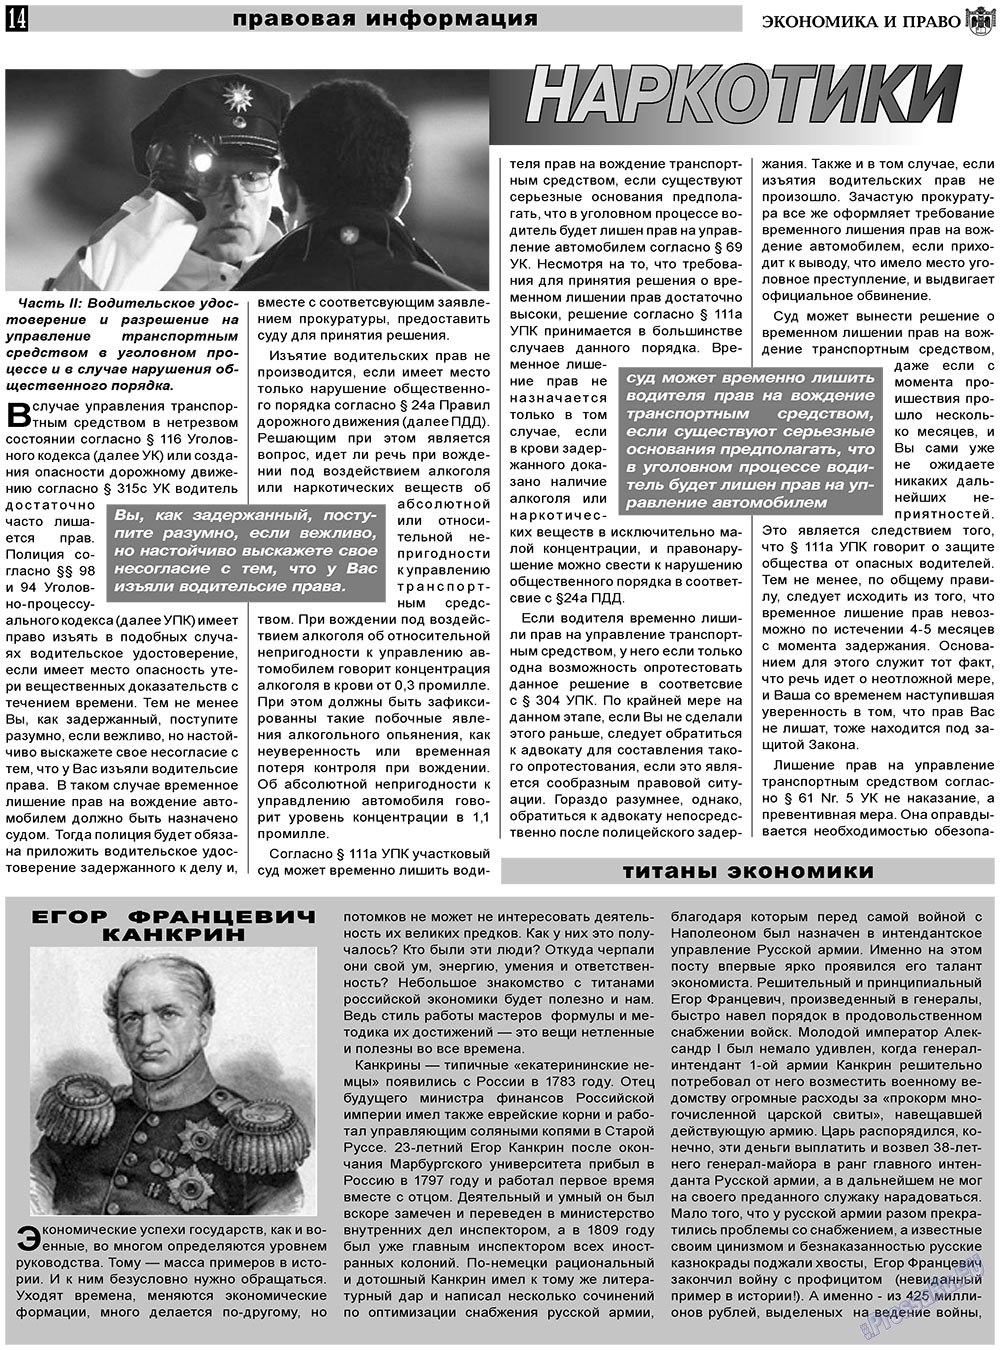 Экономика и право, газета. 2011 №4 стр.14